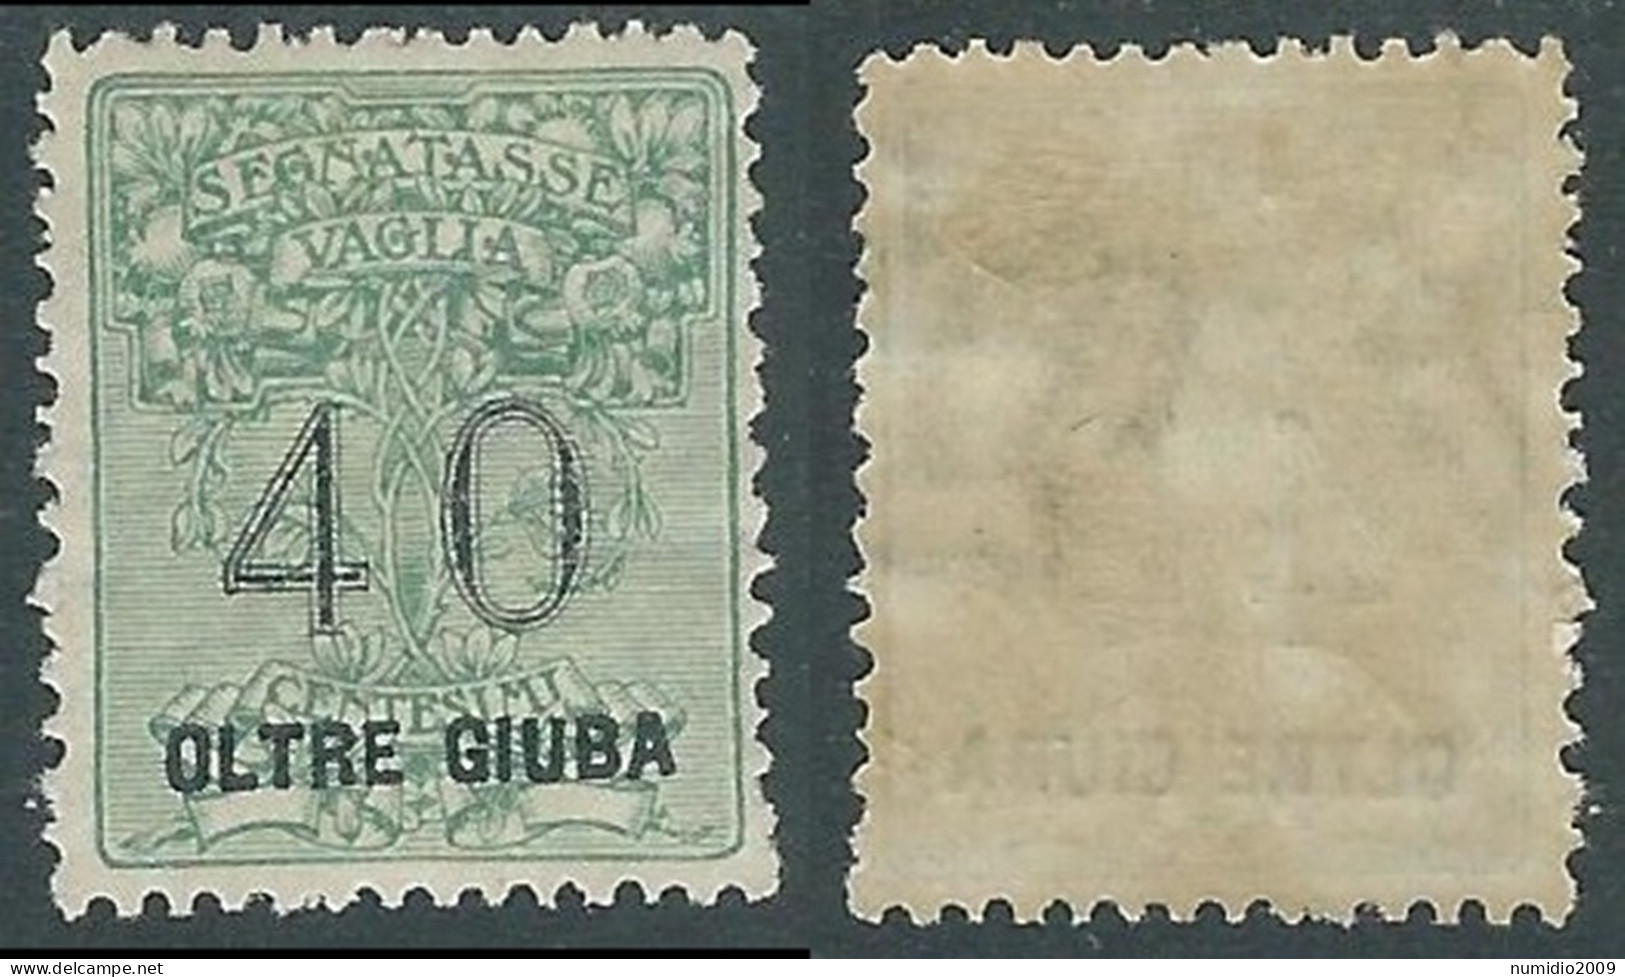 1925 OLTRE GIUBA SEGNATASSE PER VAGLIA 40 CENT MH * - I55-2 - Oltre Giuba